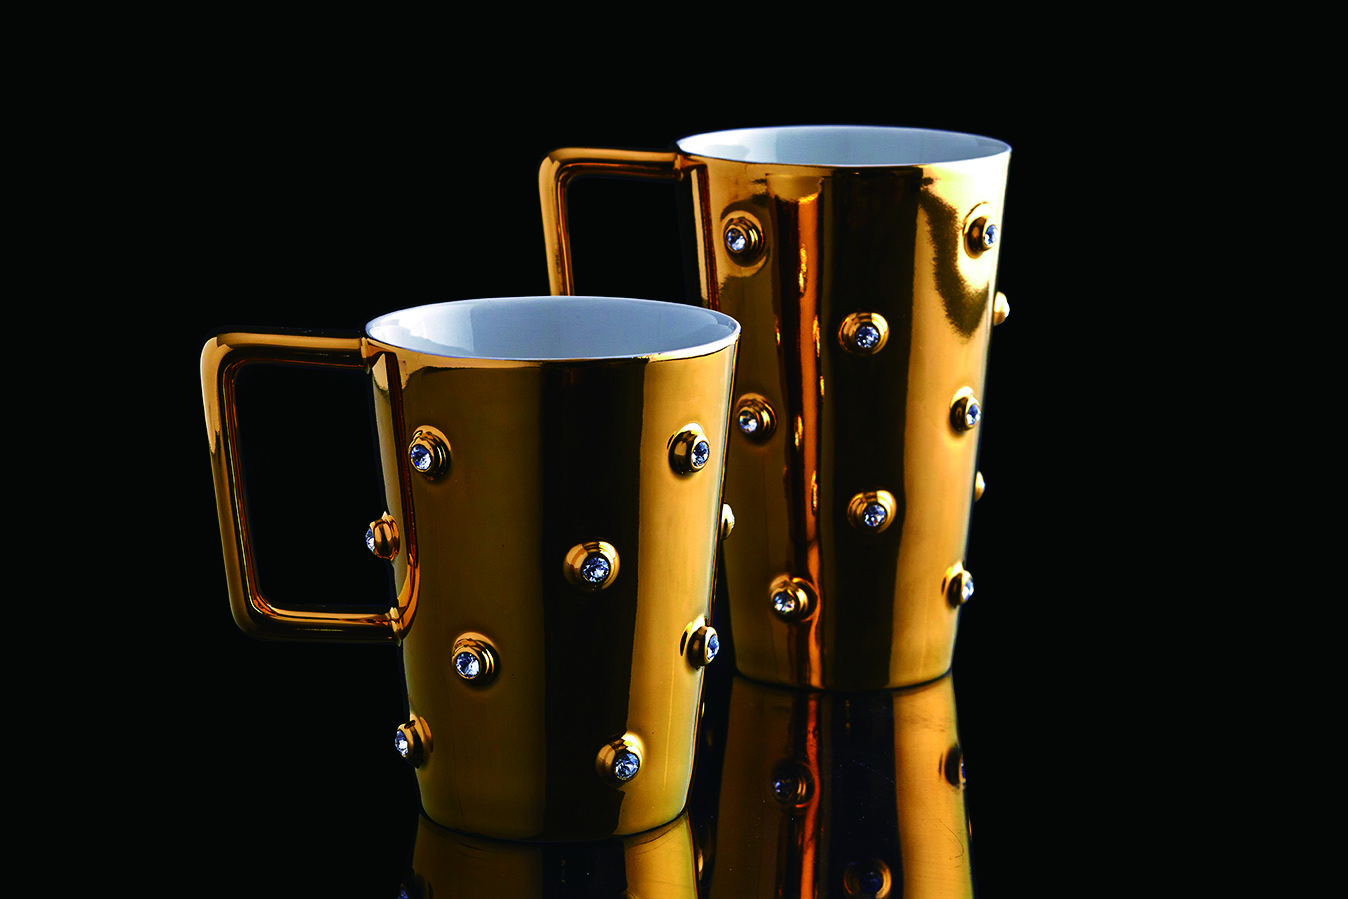 金色吉星晶鑽馬克杯，為施華洛世奇紀念特展限定，結合傳統陶瓷工藝與當代創意設計，展現兩個品牌源源不斷的活力。.jpg